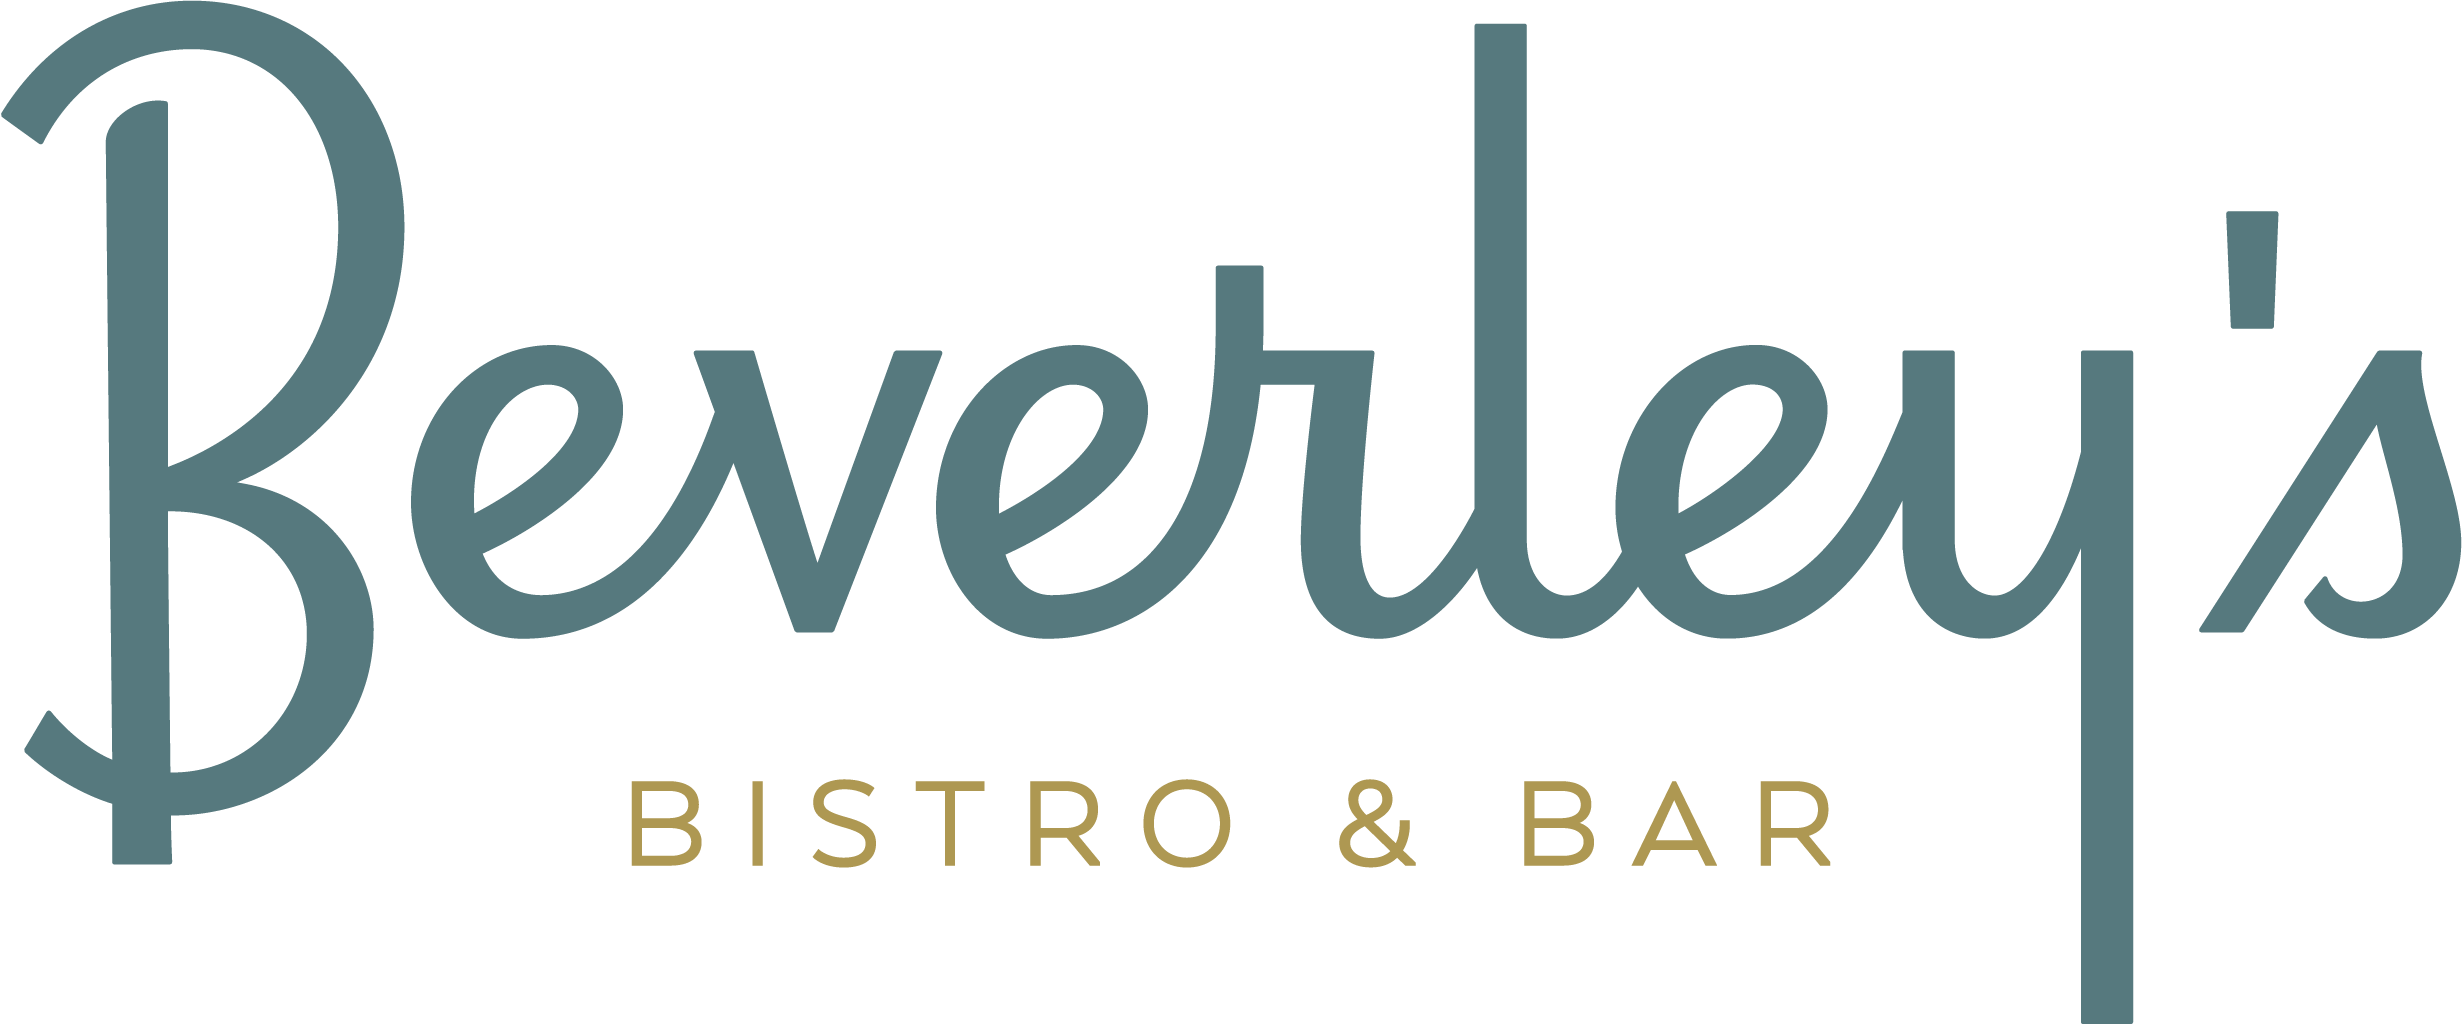 Beverley’s Bistro & Bar